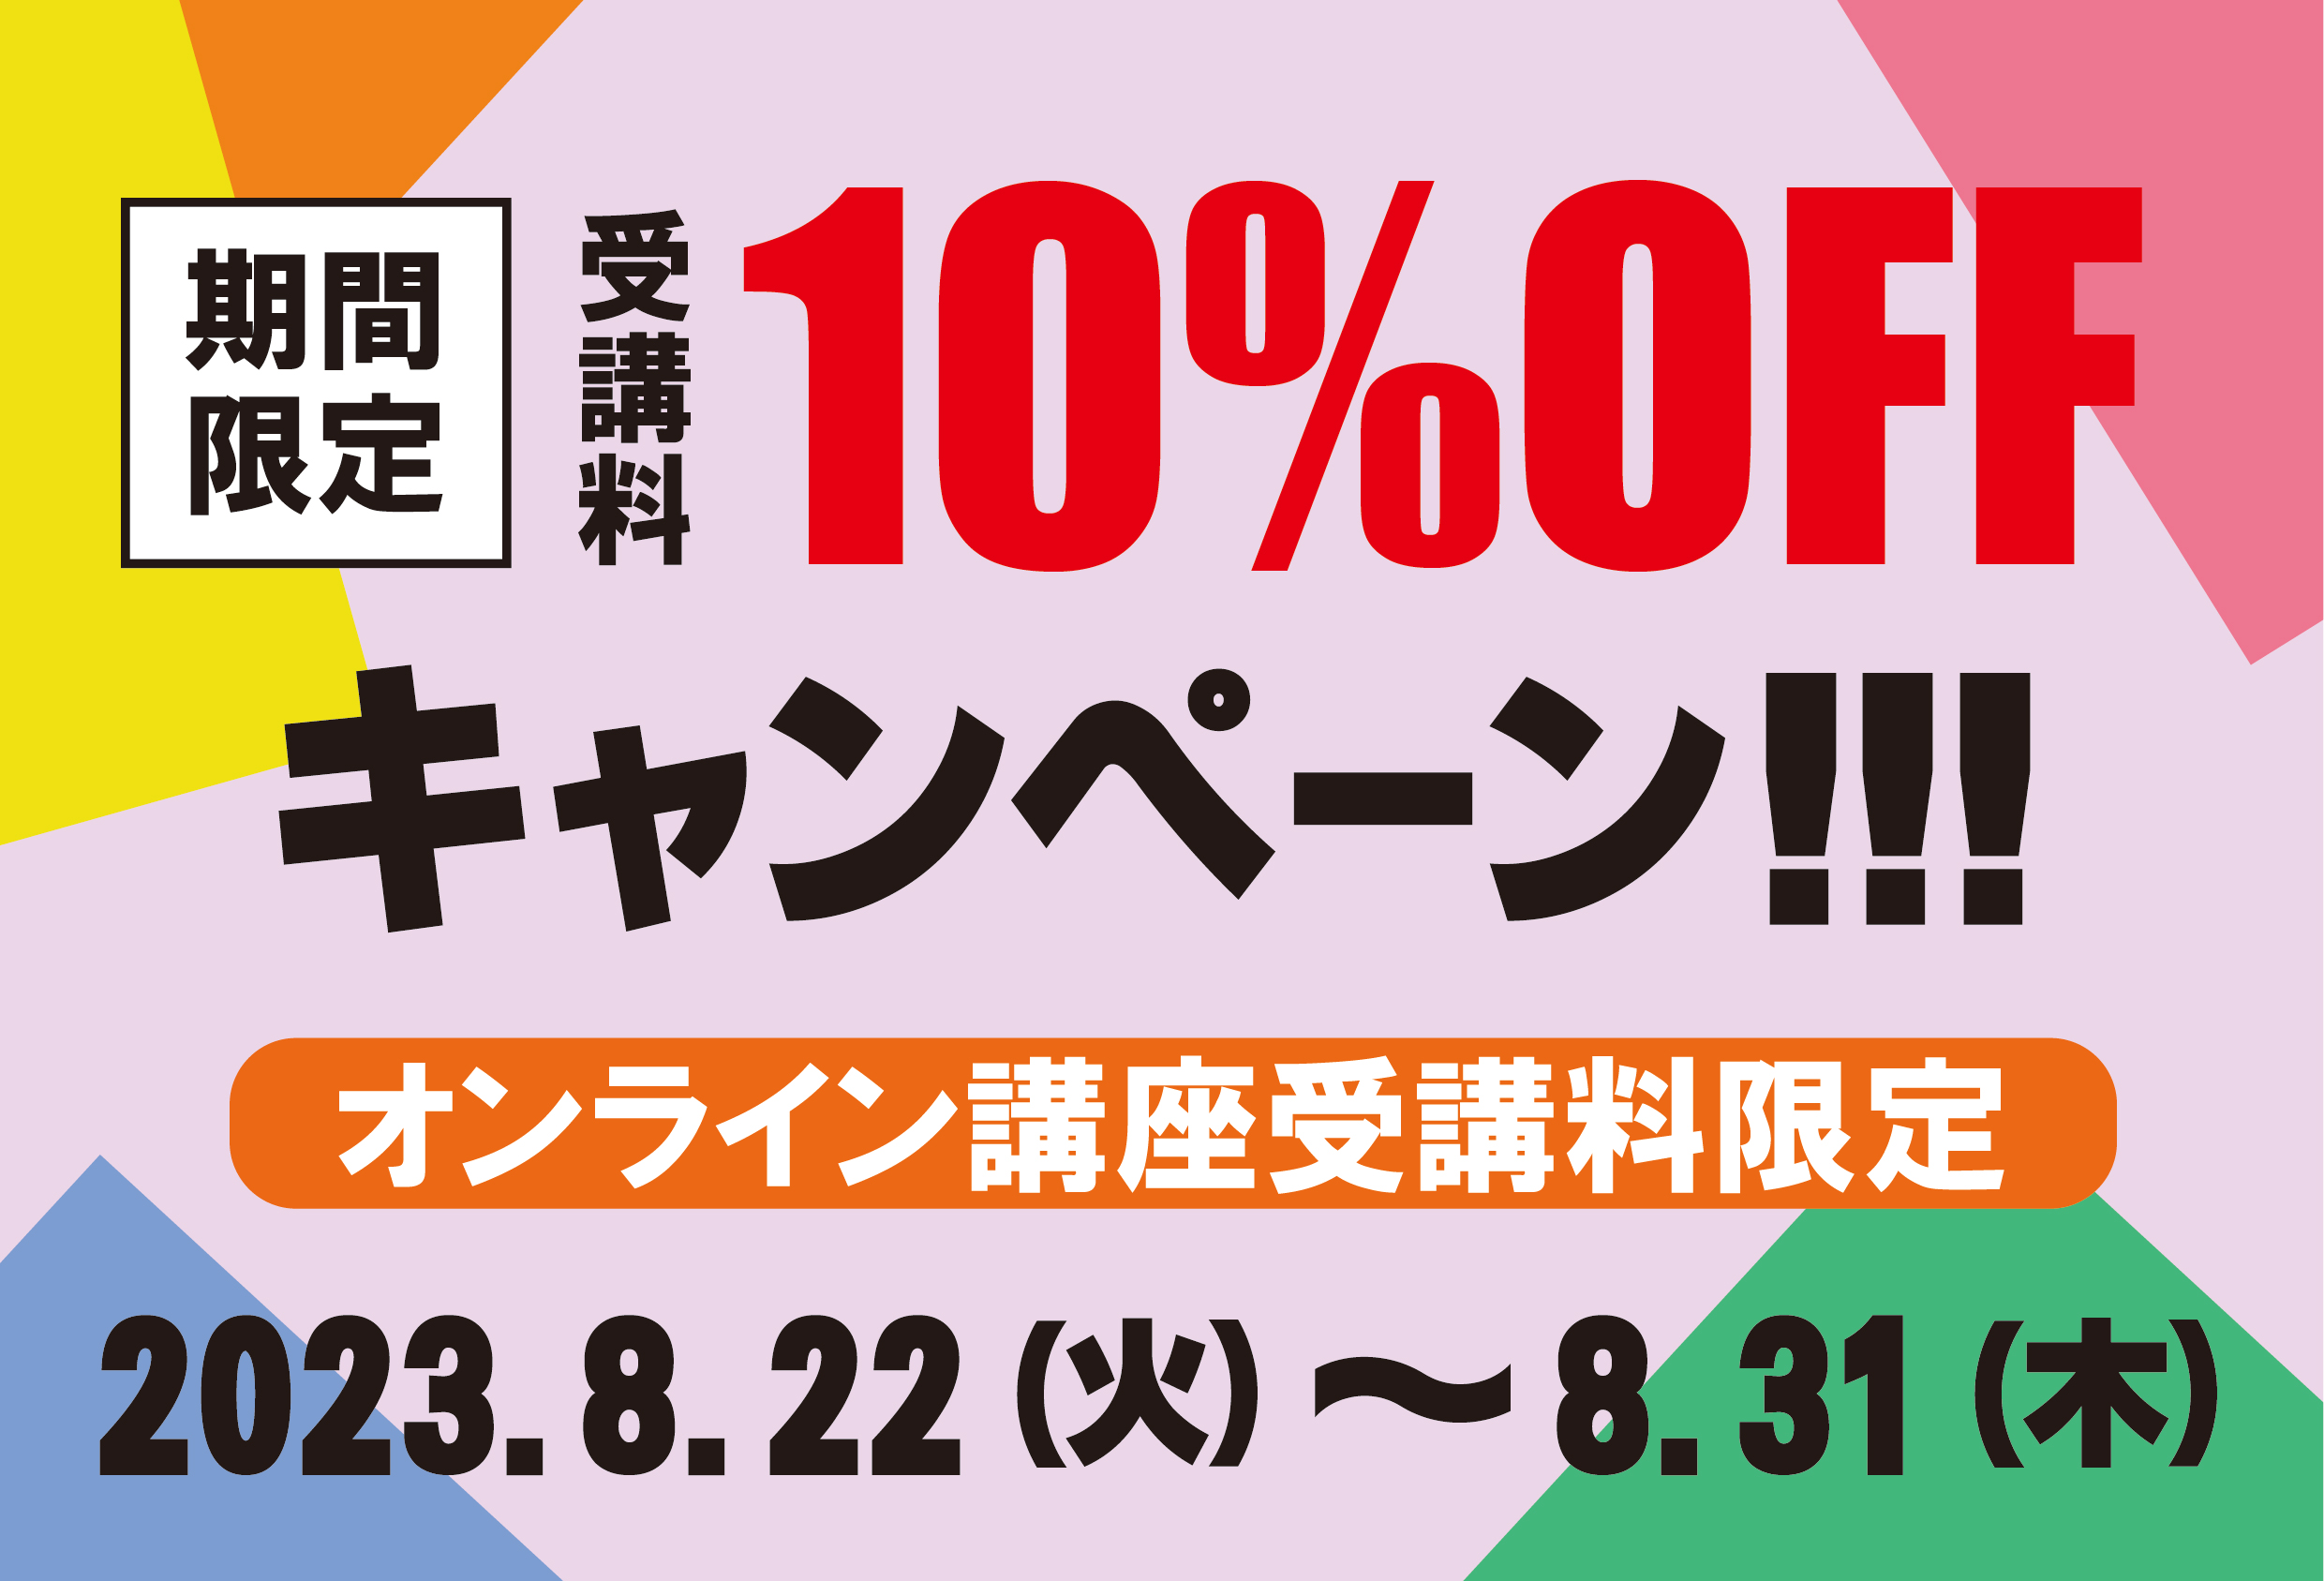 期間限定!! オンライン講座 授業料10%OFFキャンペーン!!!